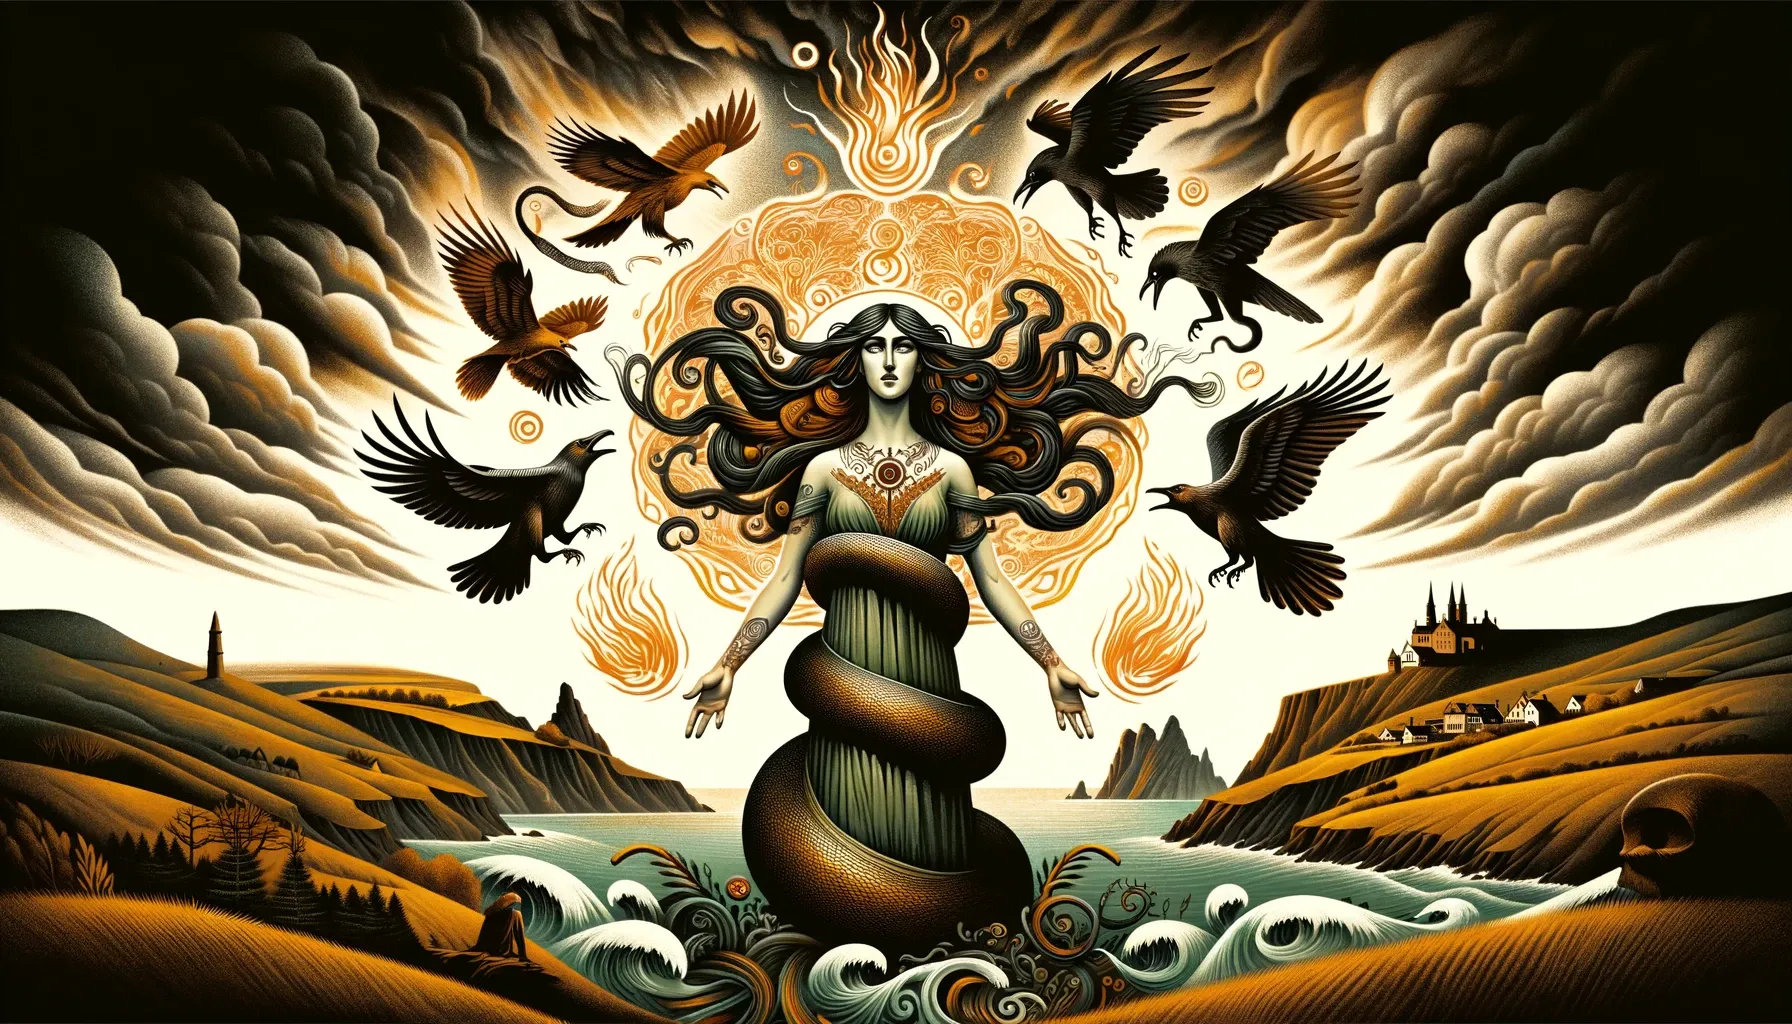 Imagen de Mari, la diosa vasca, rodeada de serpientes, cuervos y un aura de fuego, con un paisaje tormentoso del País Vasco.